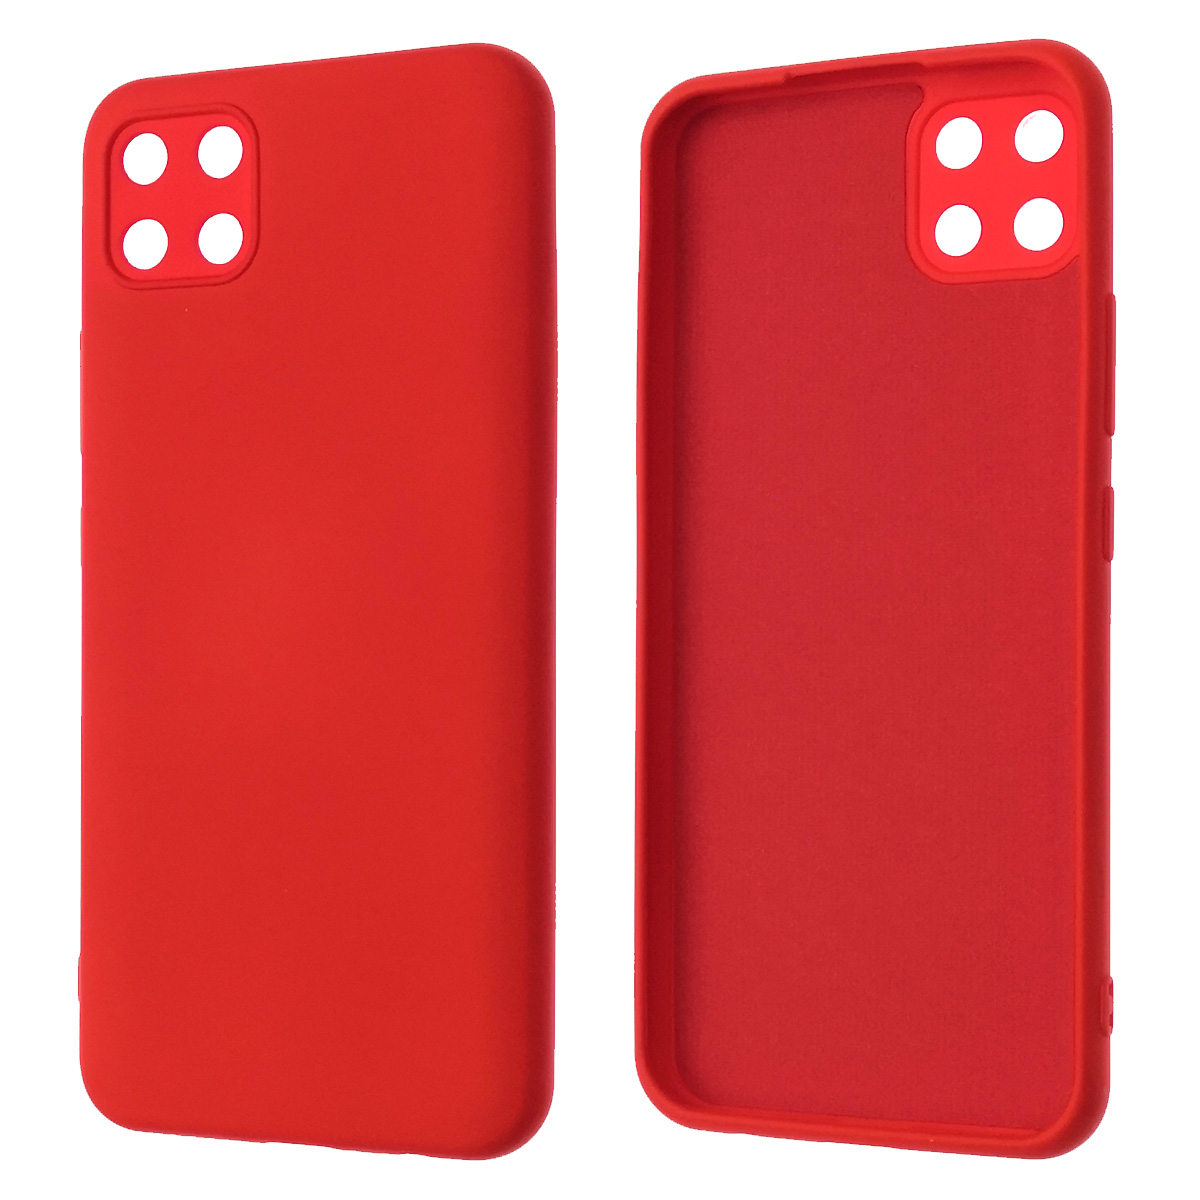 Чехол накладка NANO для Realme C11 2020, силикон, бархат, цвет красный